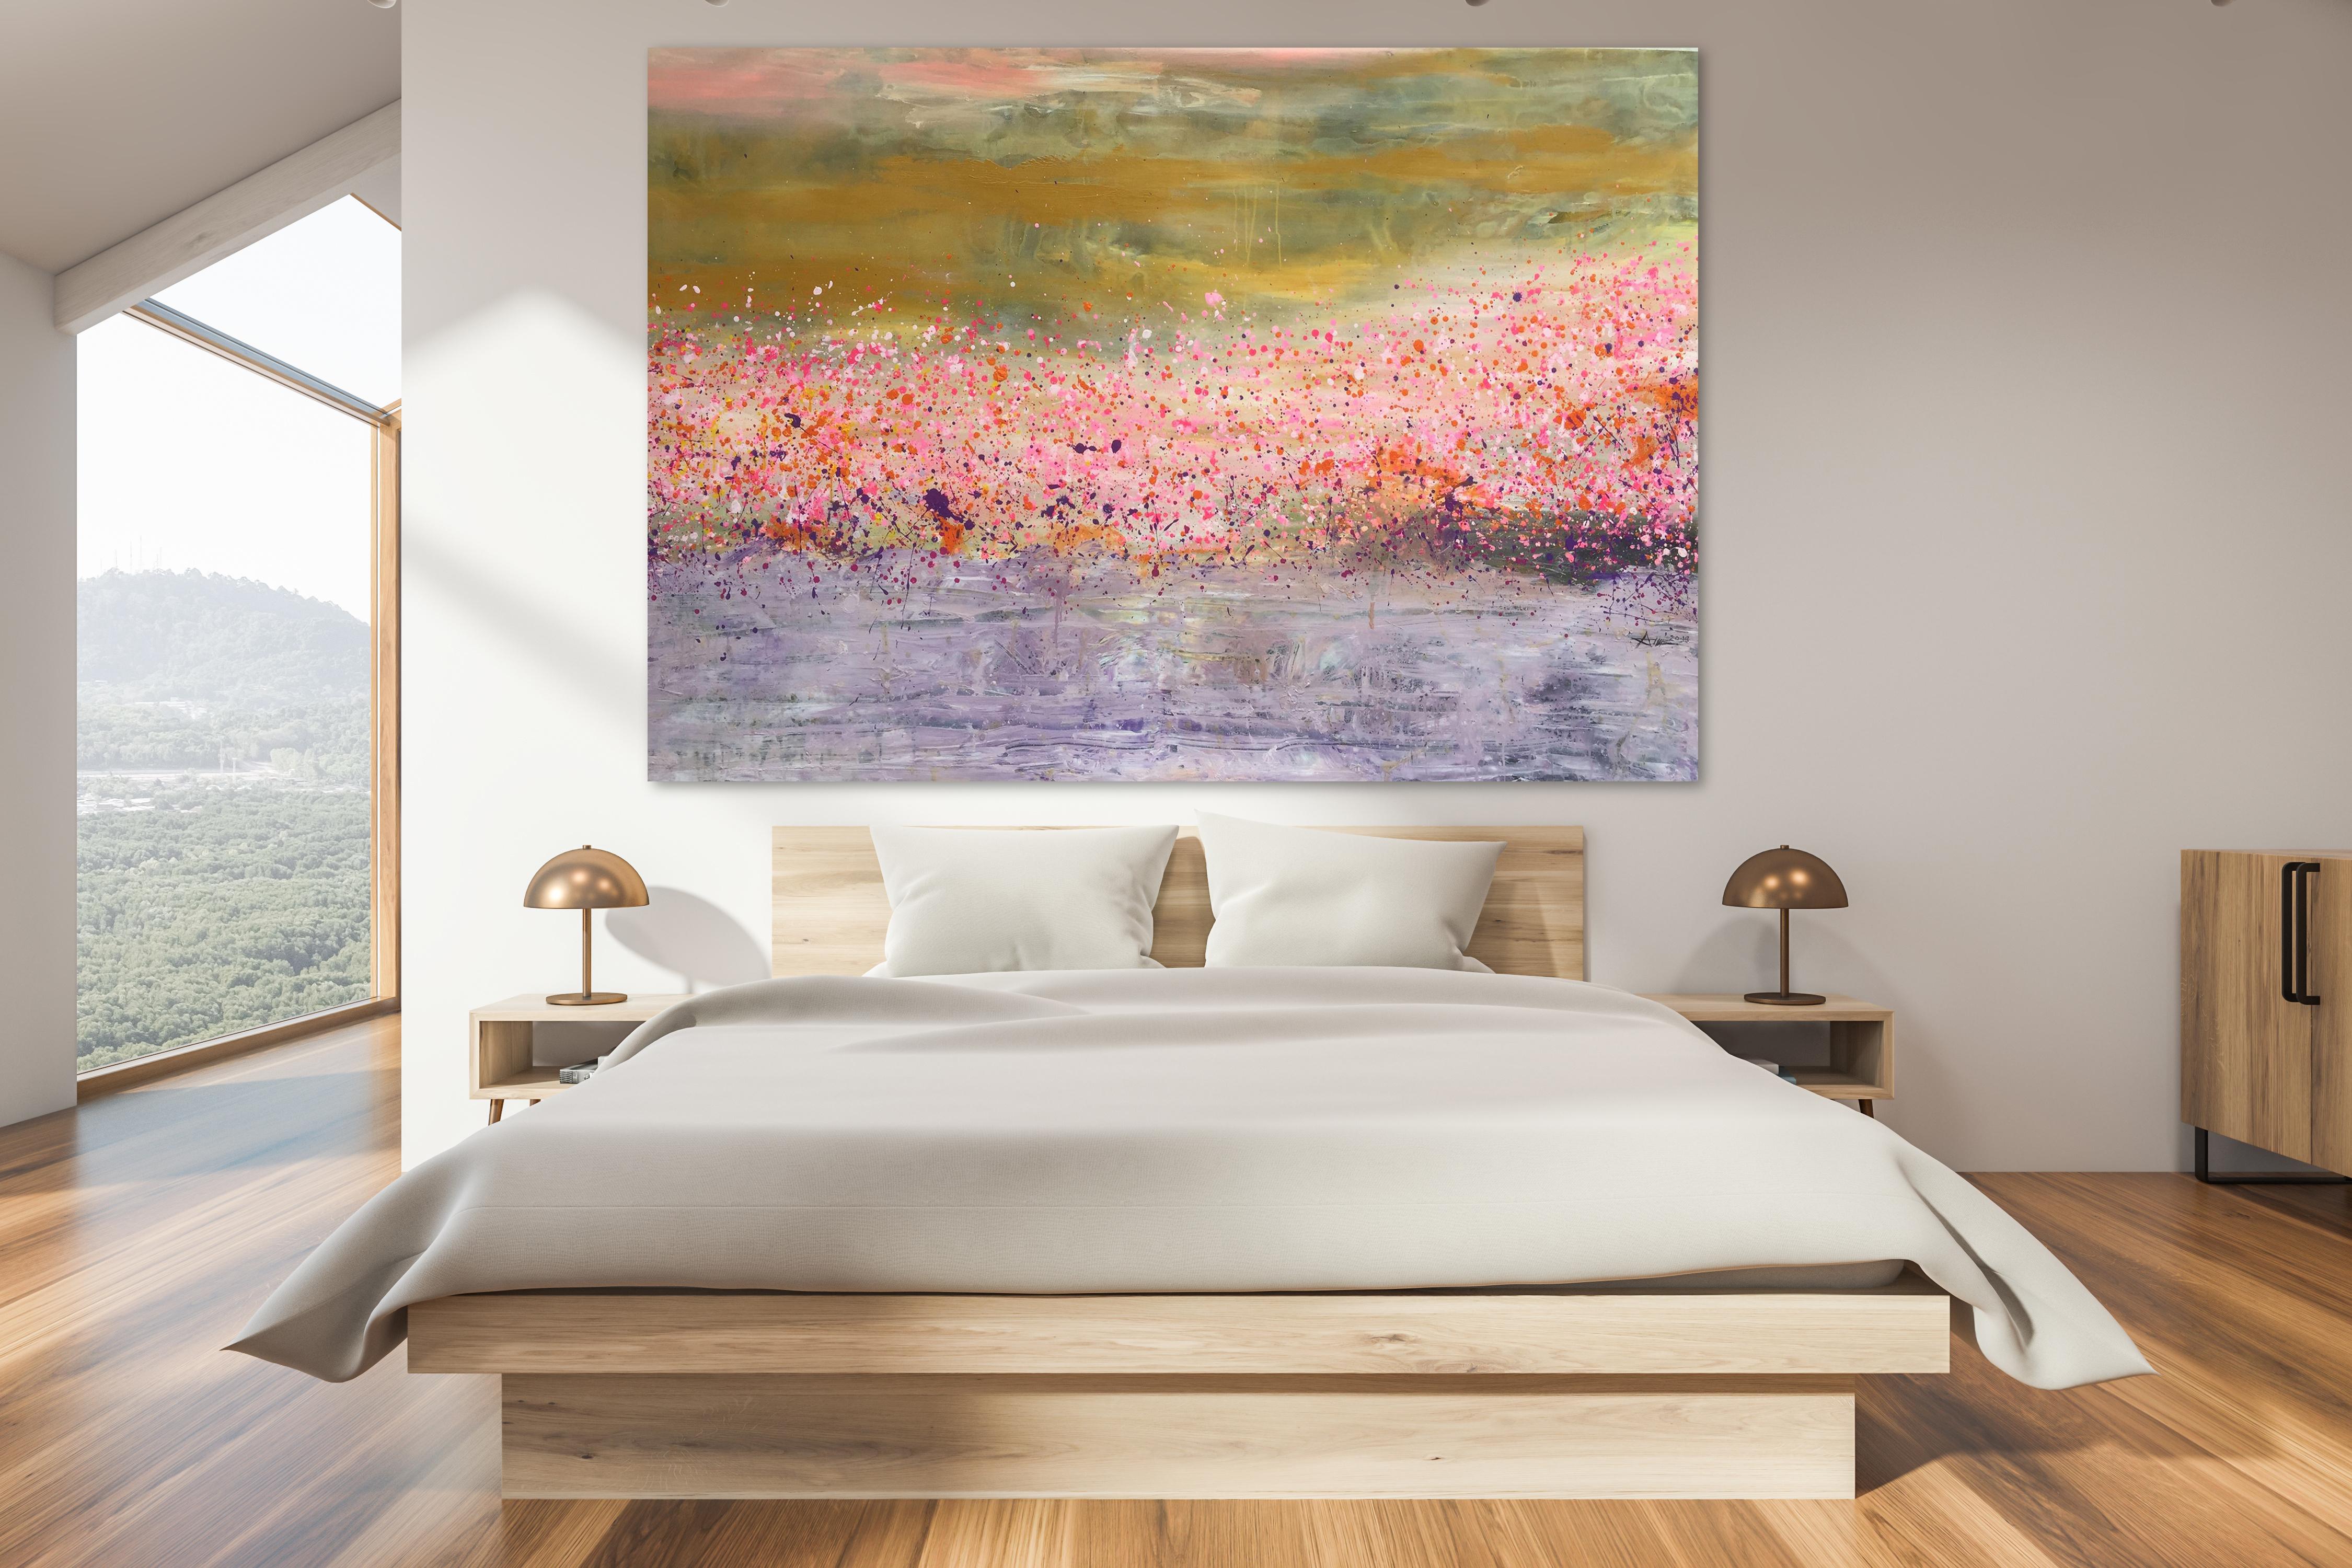 Le printemps rose - Painting de Nguyen Xuan Anh